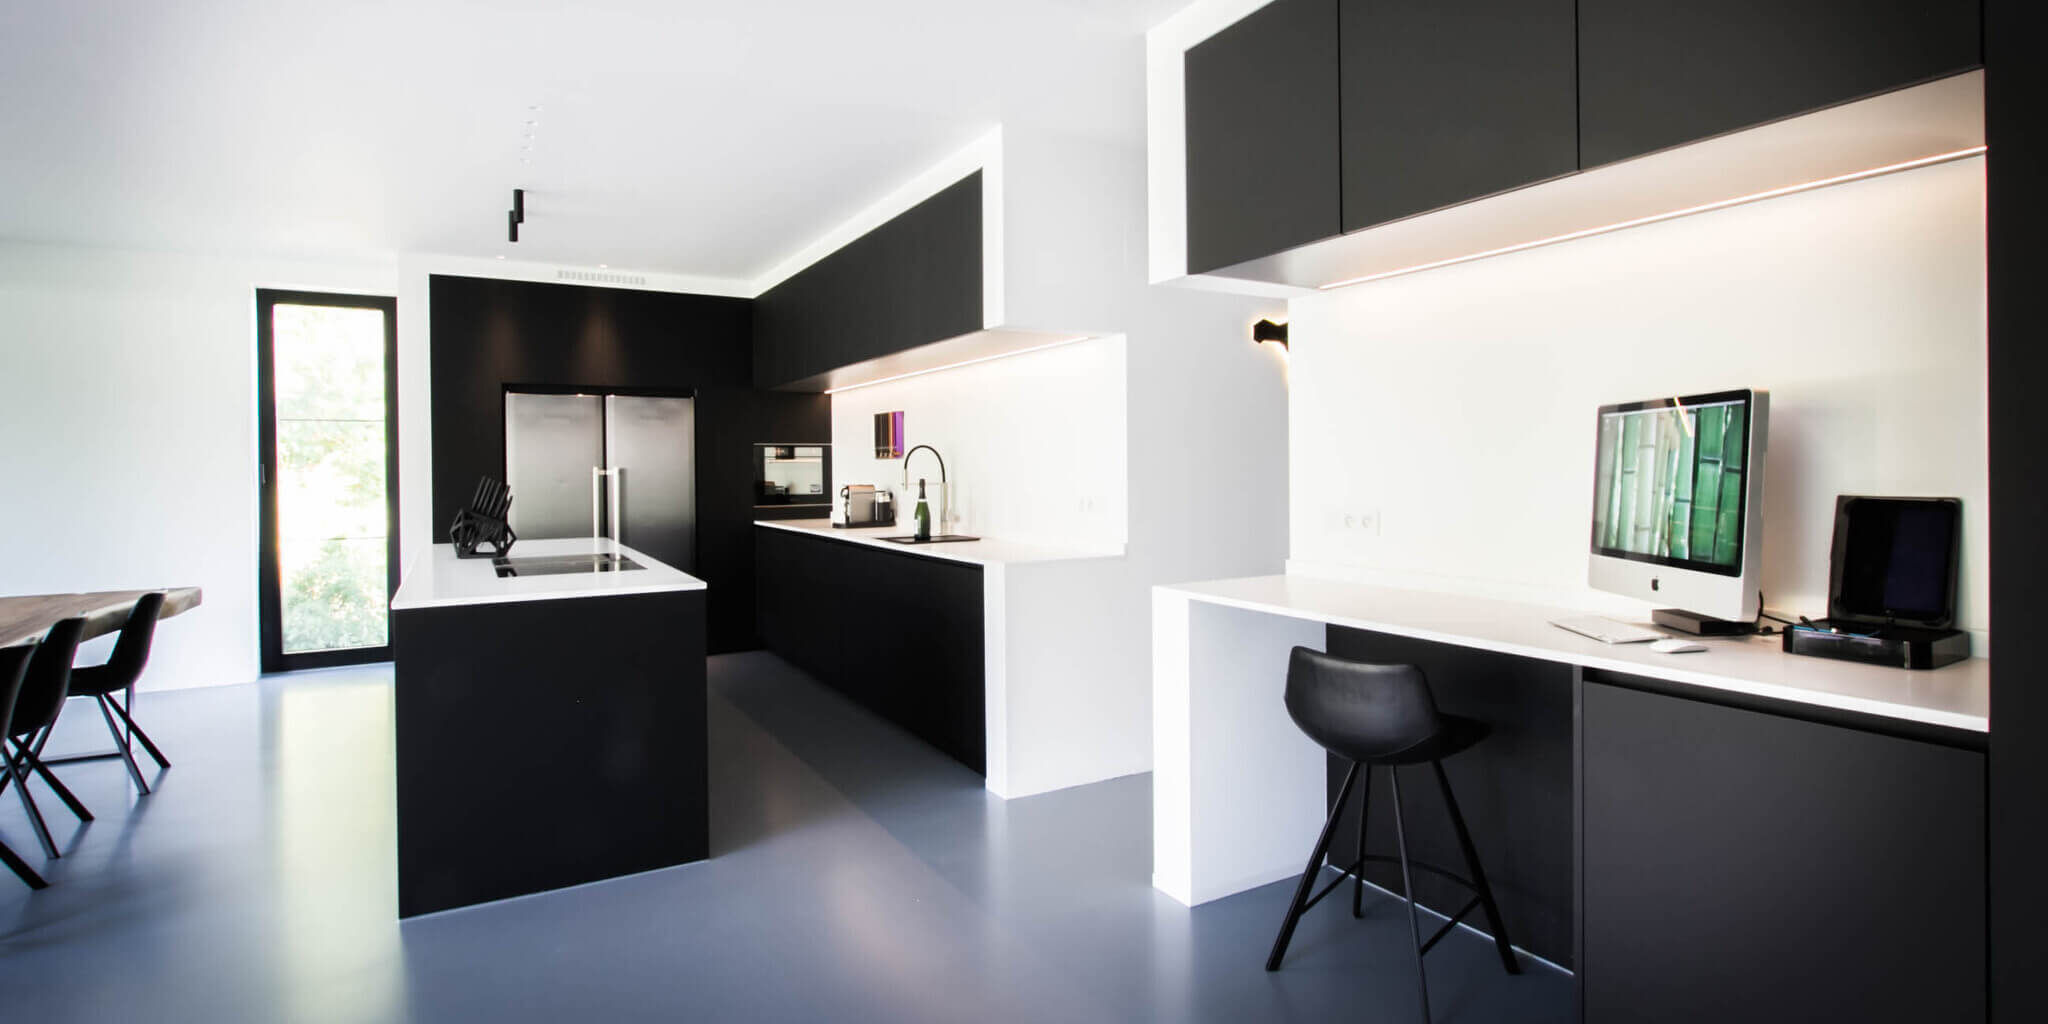 Zwarte keuken met wit blad: een ontwerp met x-factor